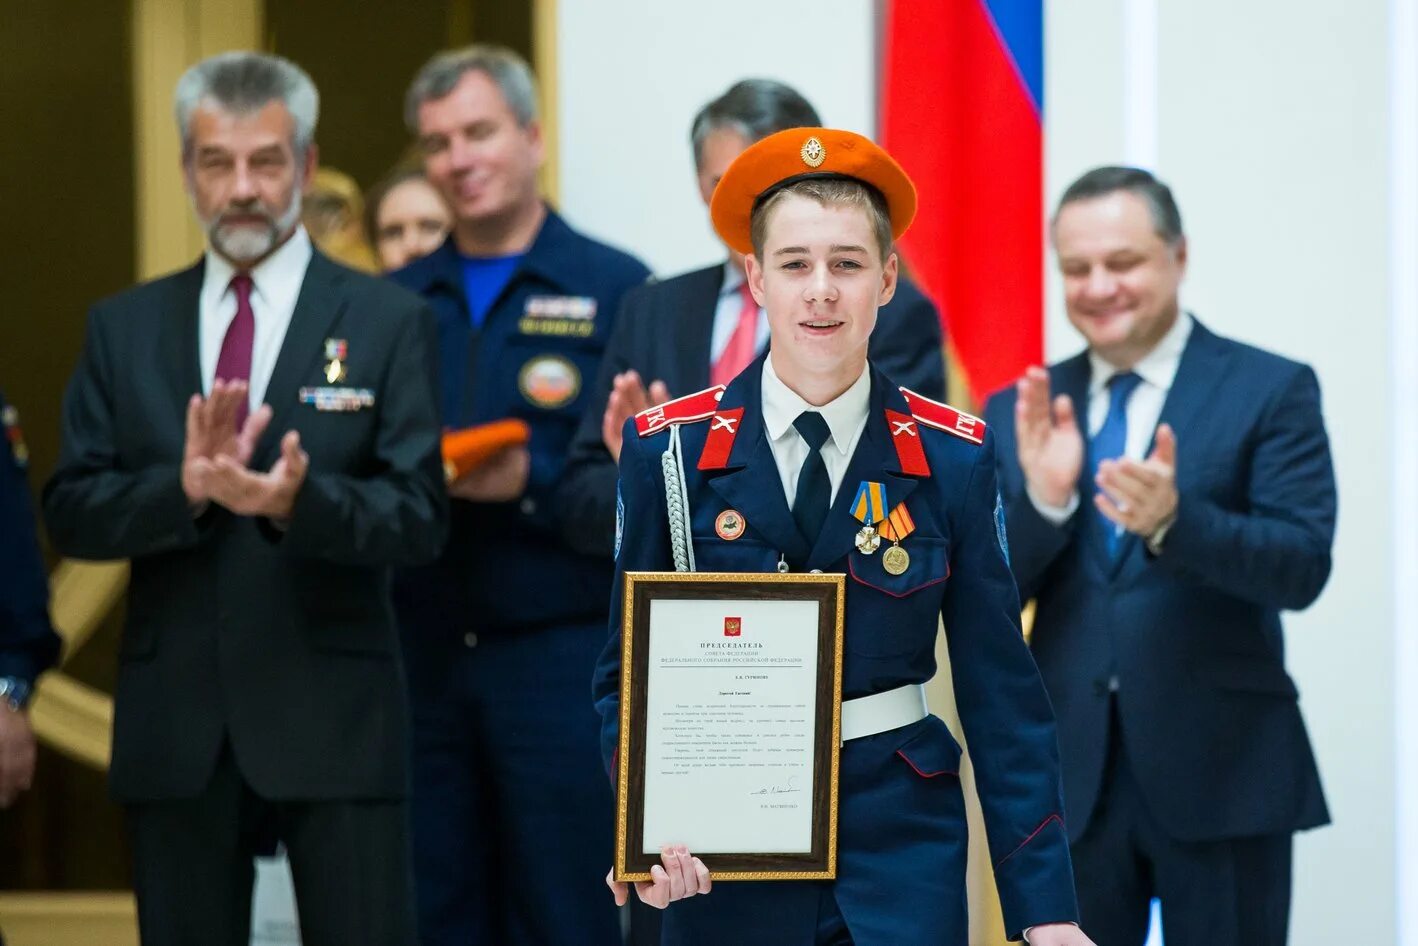 Награждение медалью. Награждение юных героев. Вручение медали герой России. Какой медалью награждаются герои спасшие тонущих людей